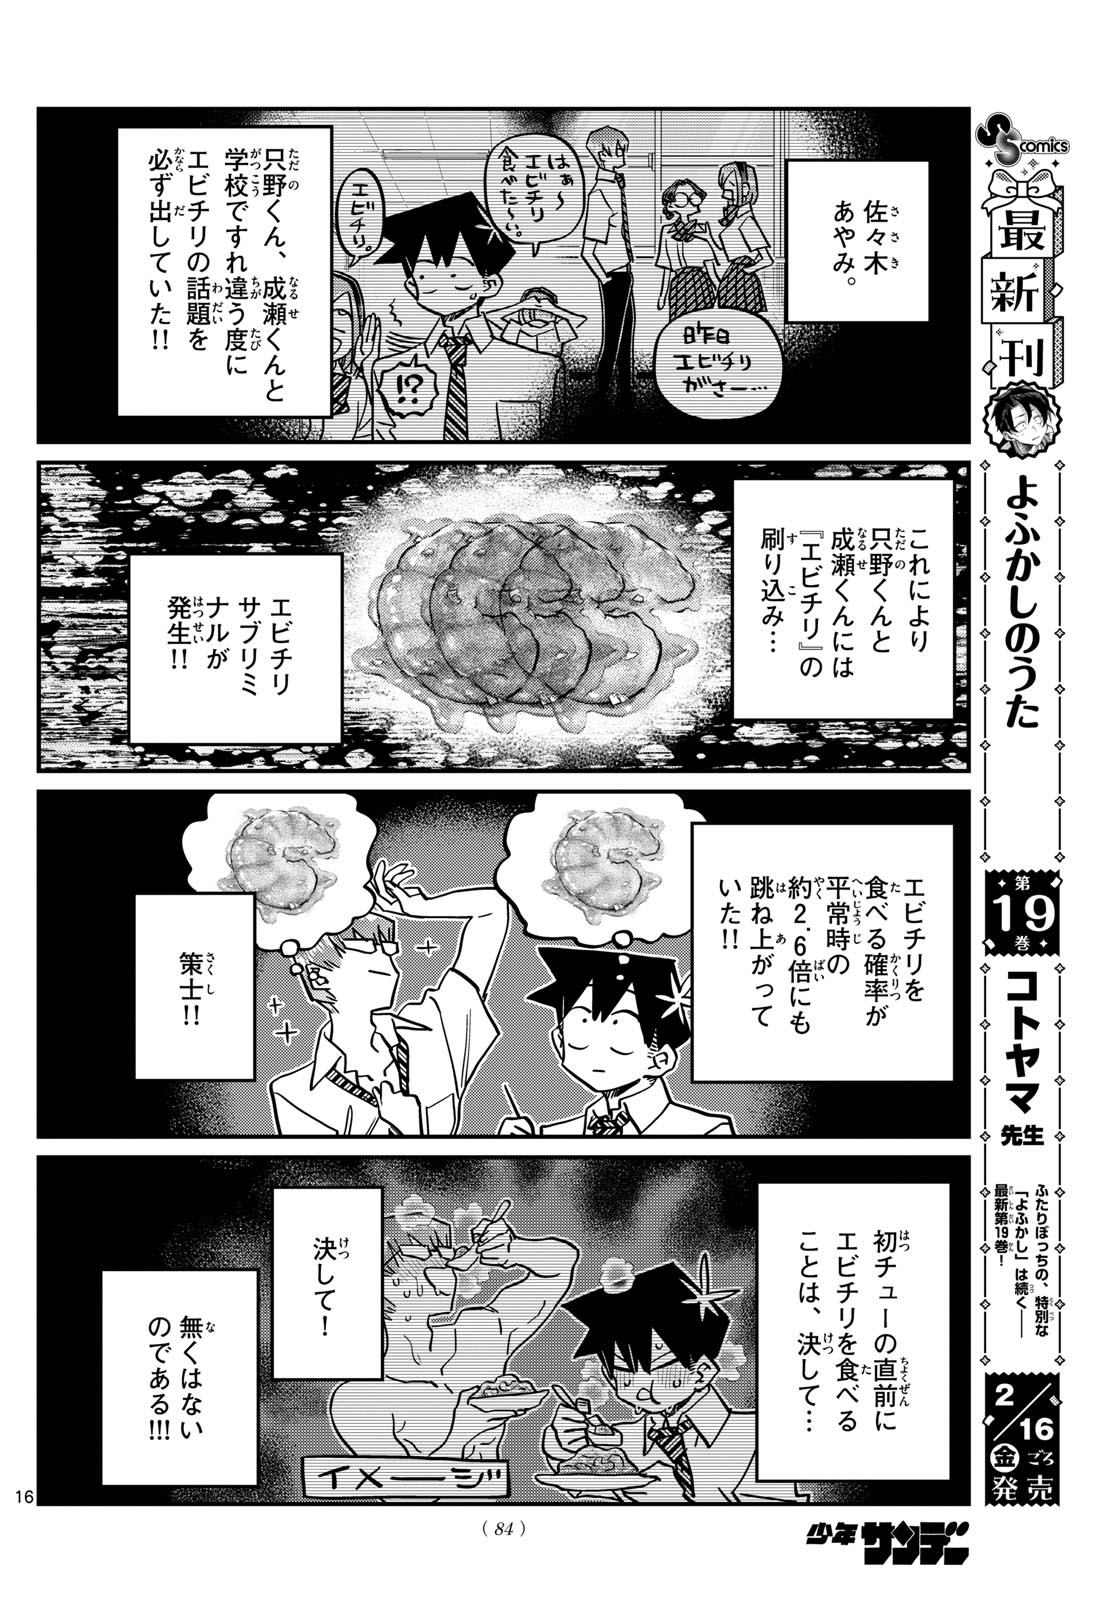 Komi-san wa Komyushou Desu - Chapter 445 - Page 3